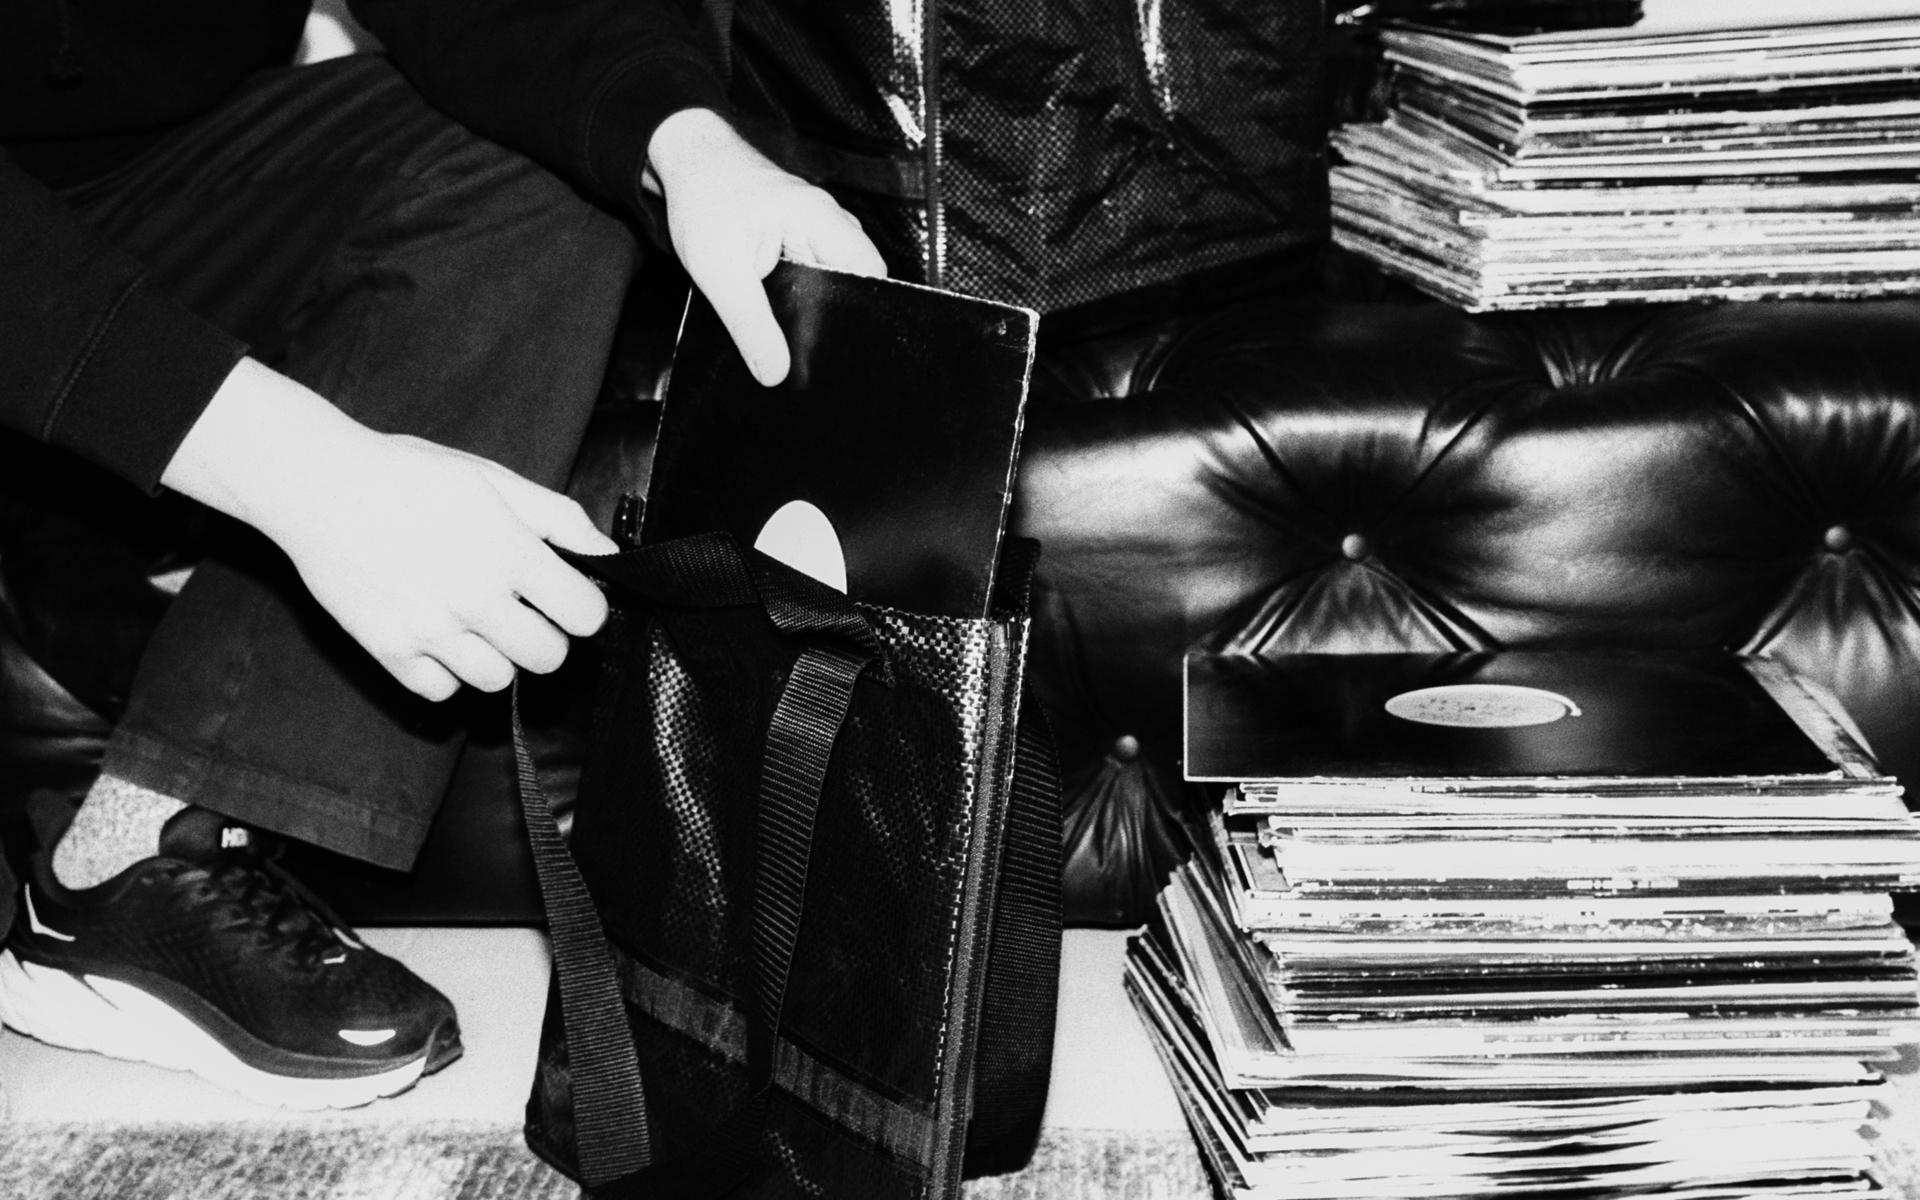  Bland prylarna Swedish House Mafia satt sitt namn på märks en större väska för vinylskivor.